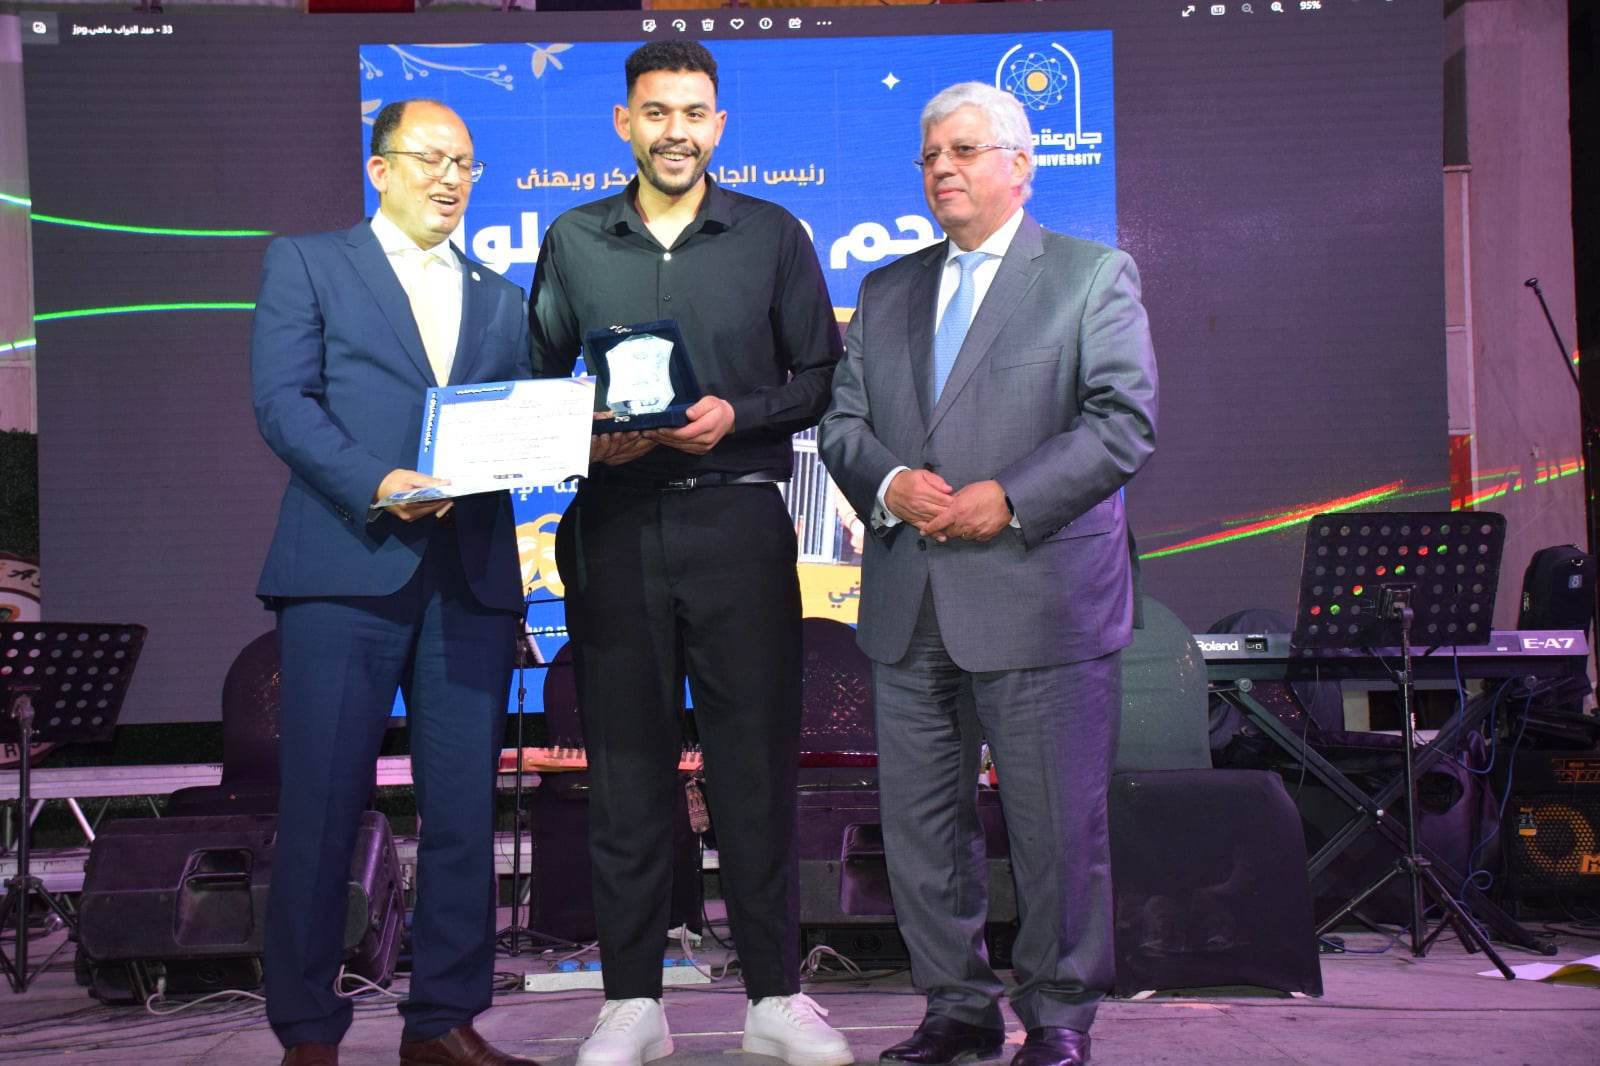 وزير التعليم العالي يشهد فعاليات تكريم الفائزين في مسابقة "أنت النجم" بجامعة حلوان